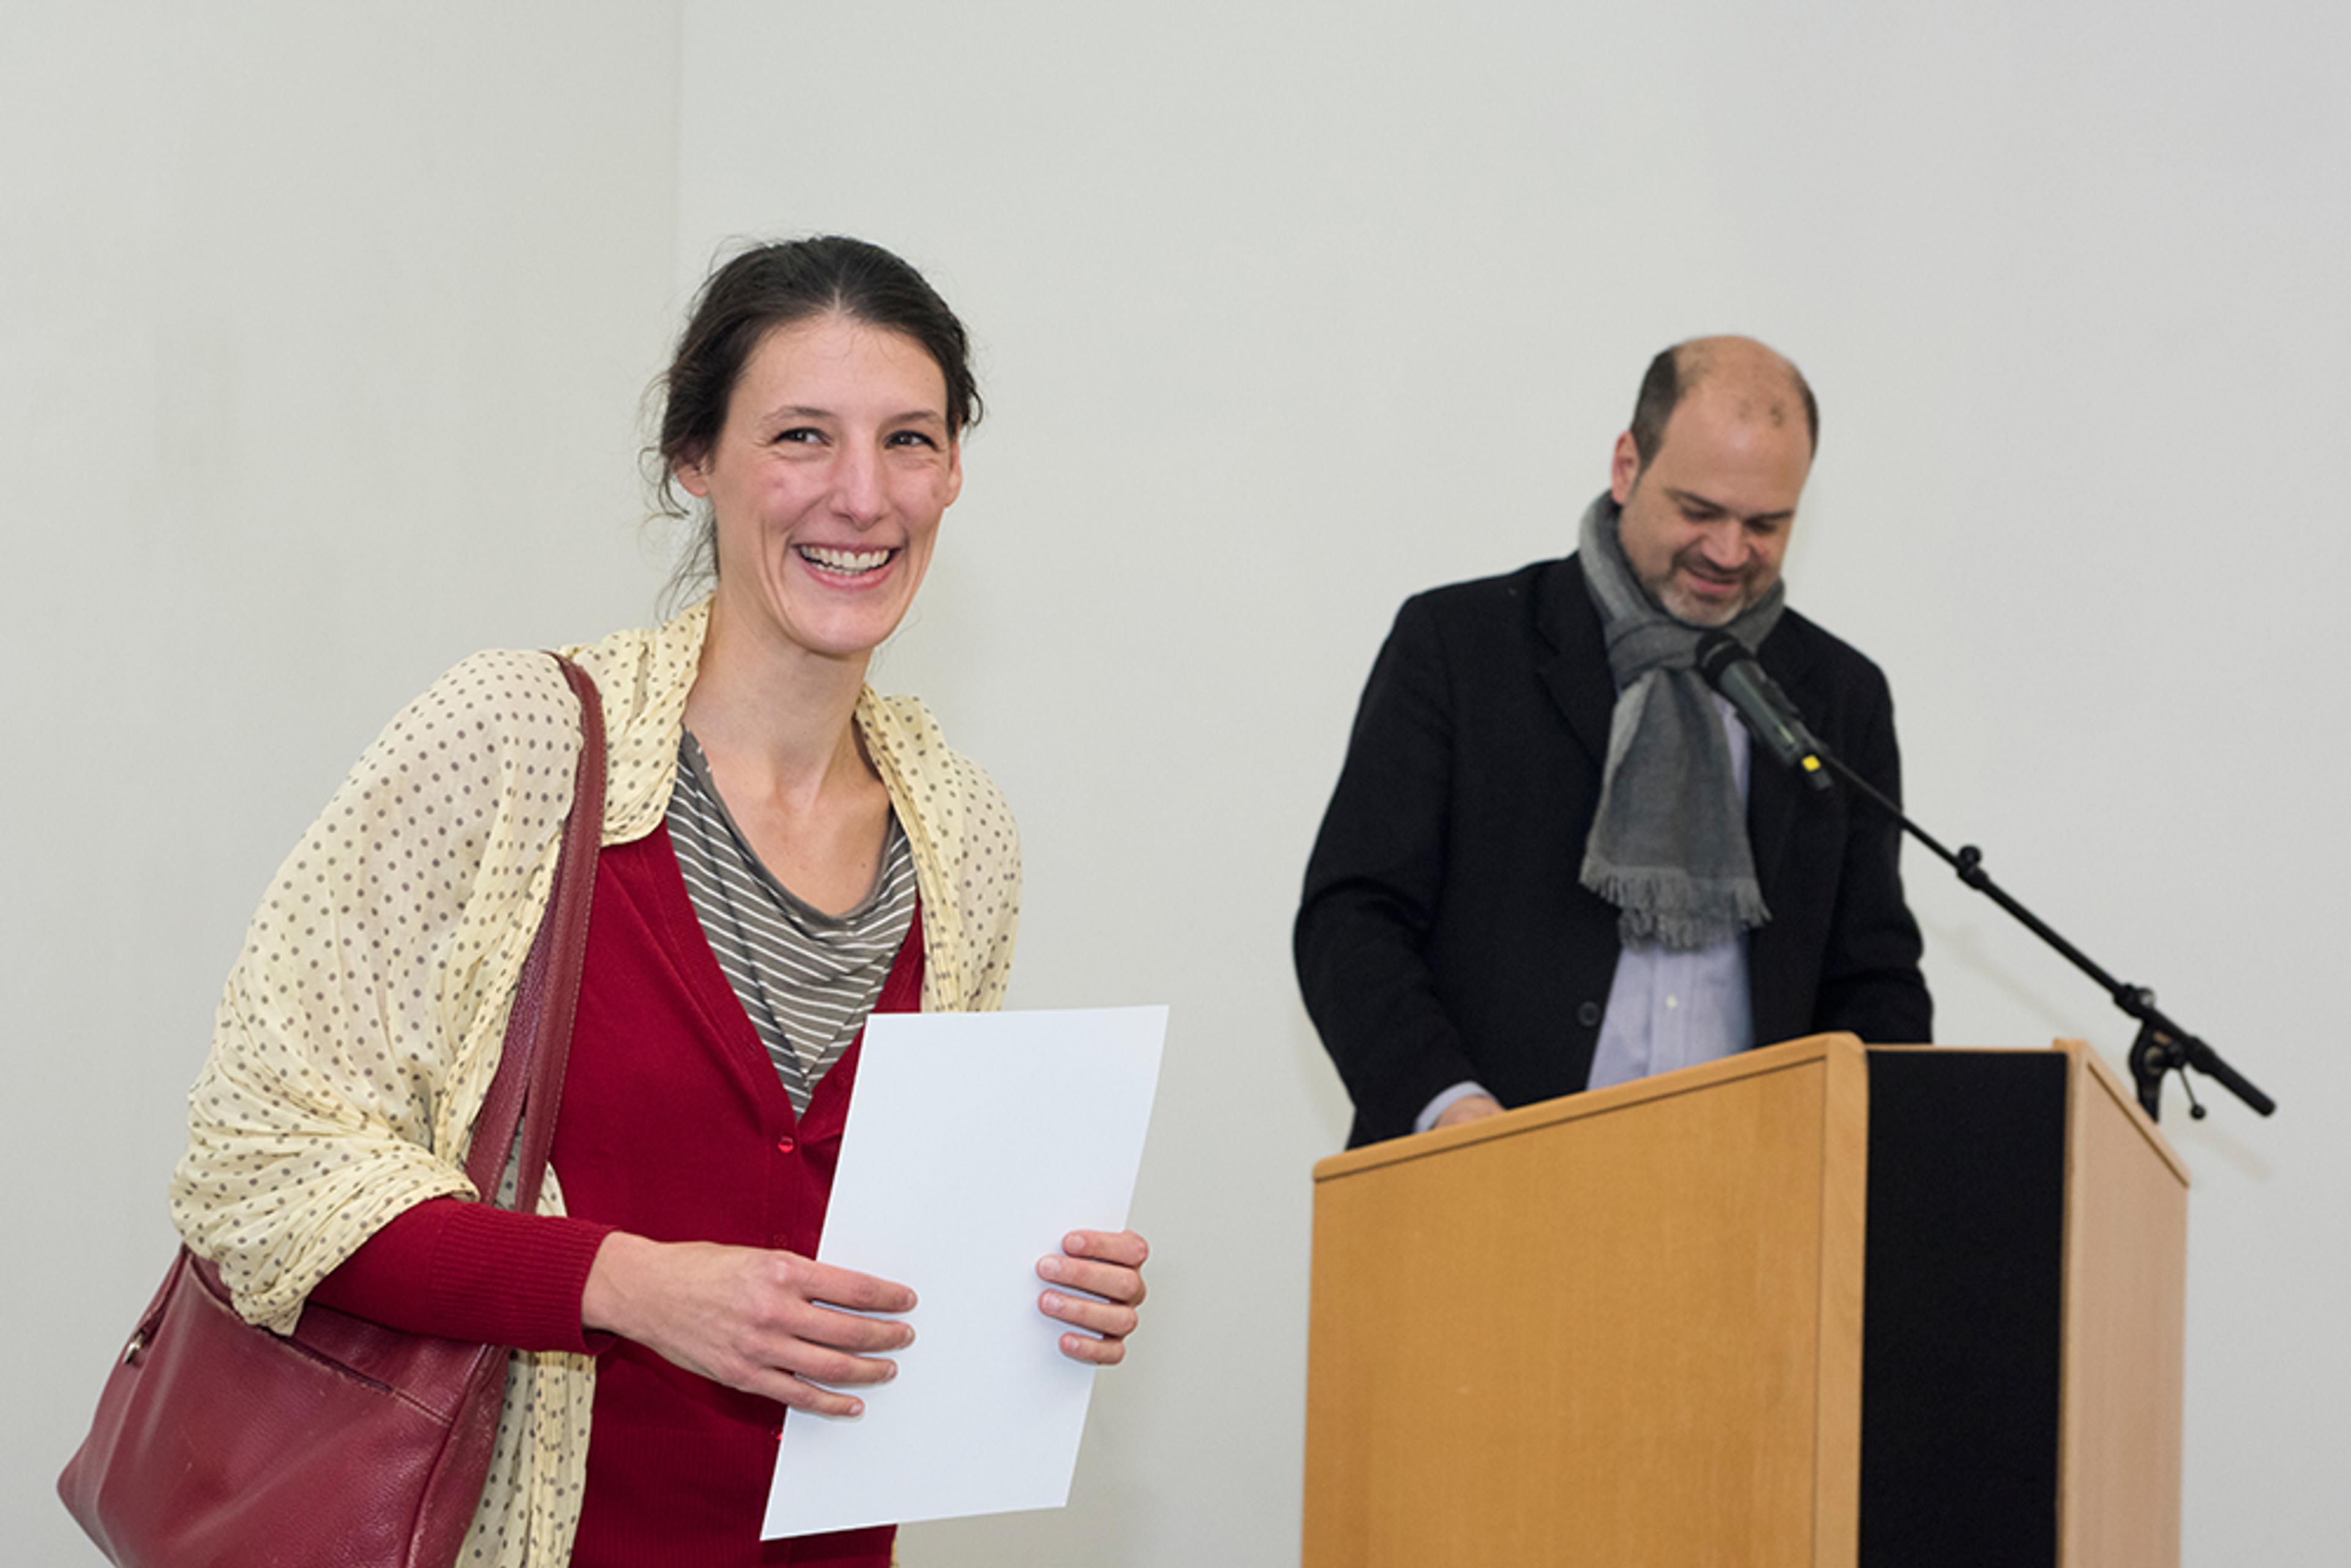 Award Ceremony: Julia Geröcs, Sami Kanaan / Photo credit: Swiss Performance Art Award 2014